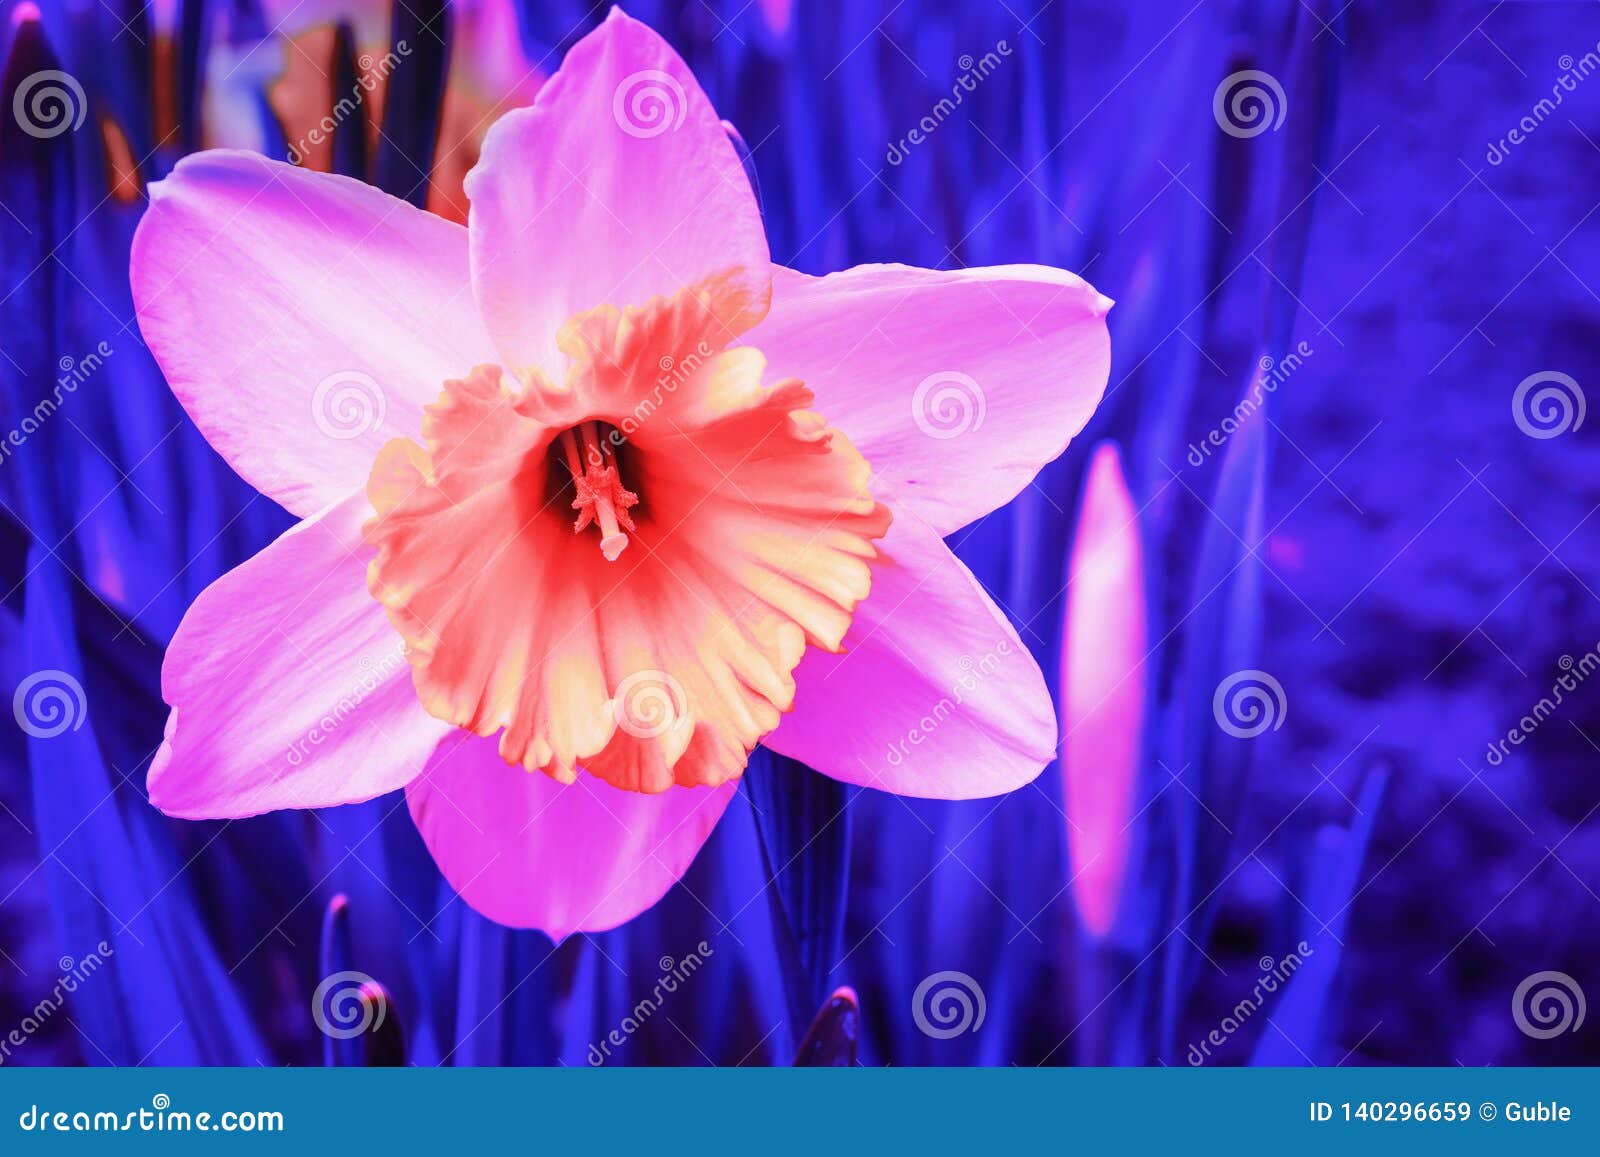 Fleur Rose Abstraite De Narcisse Dans La Lampe Au Néon Bleue Image stock -  Image du coloré, conception: 140296659